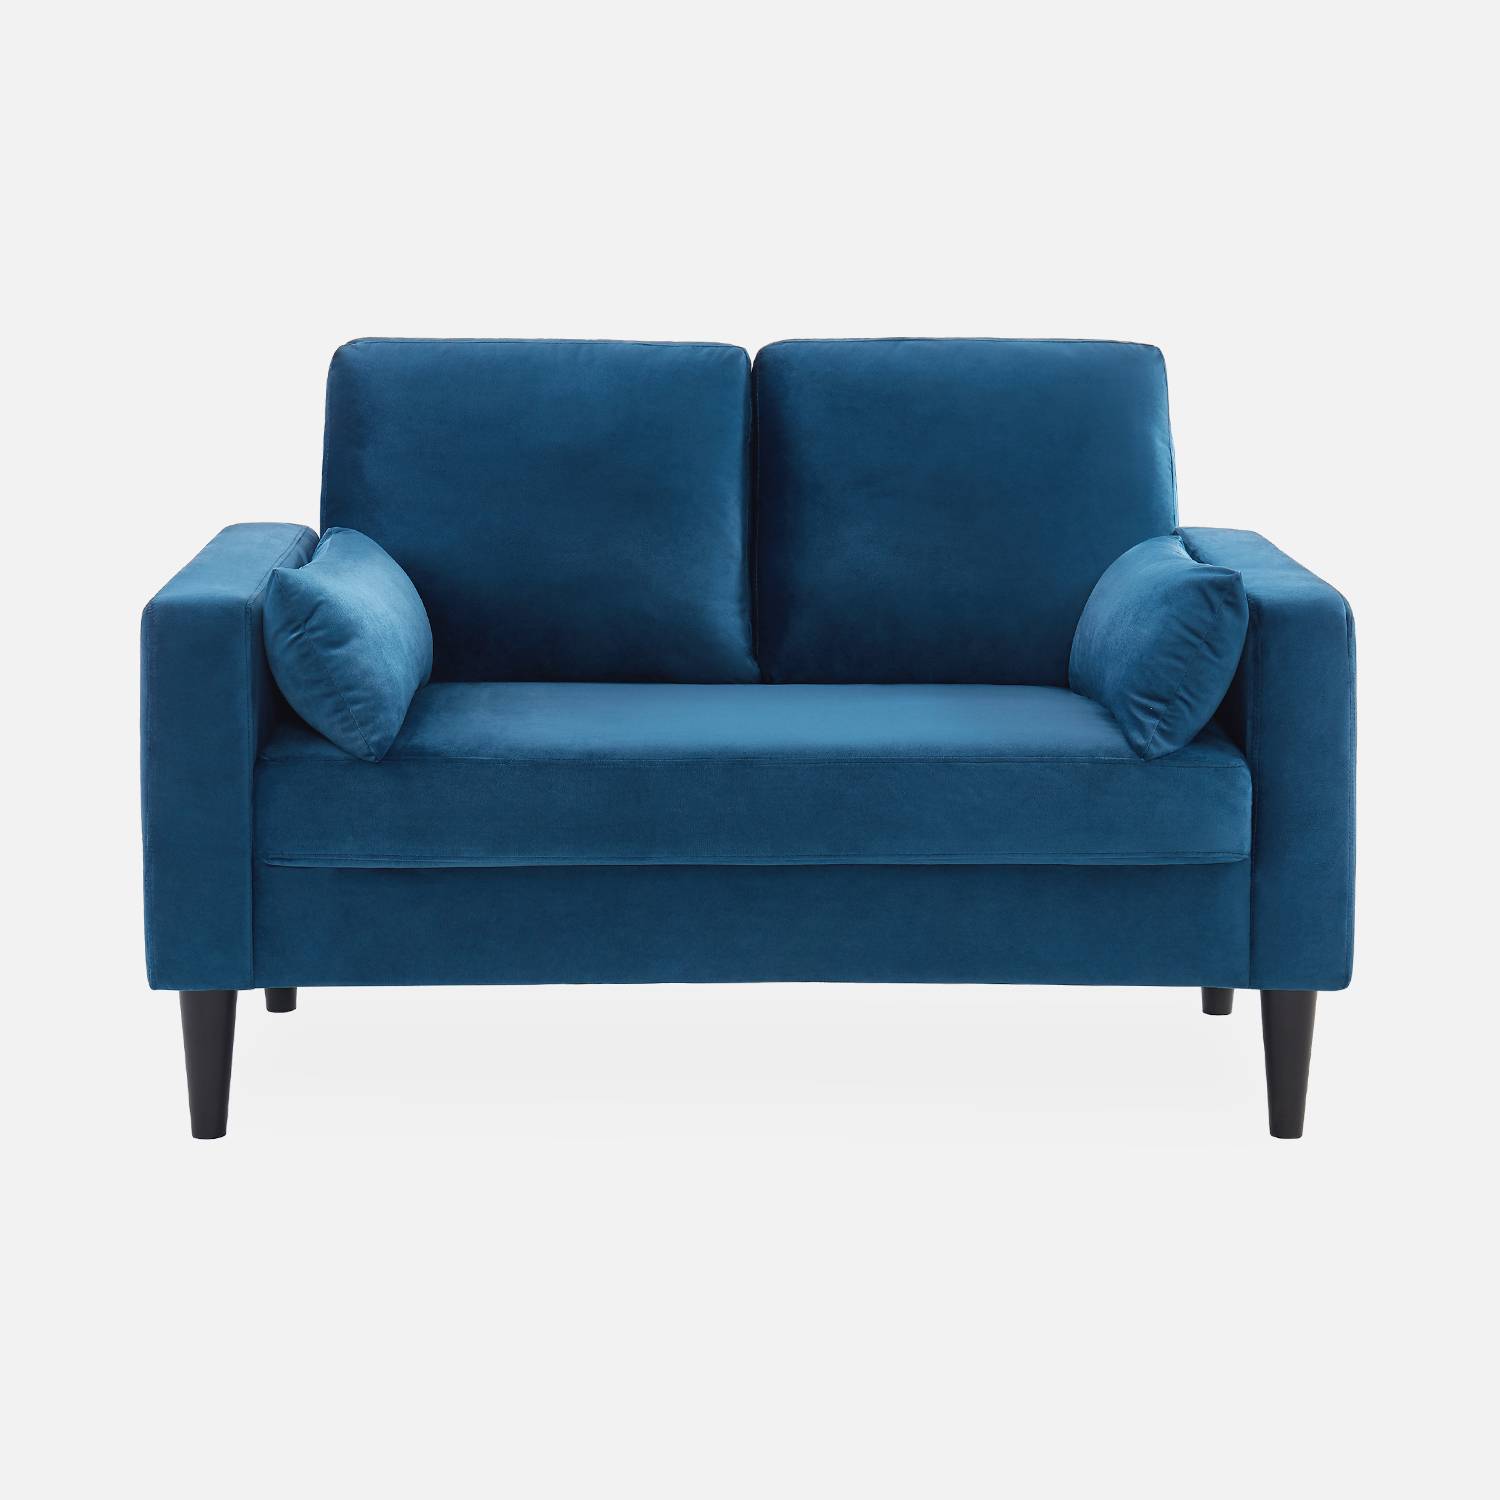 Sofá de veludo azul - Bjorn - sofá reto de 2 lugares com pernas de madeira, estilo escandinavo Photo4